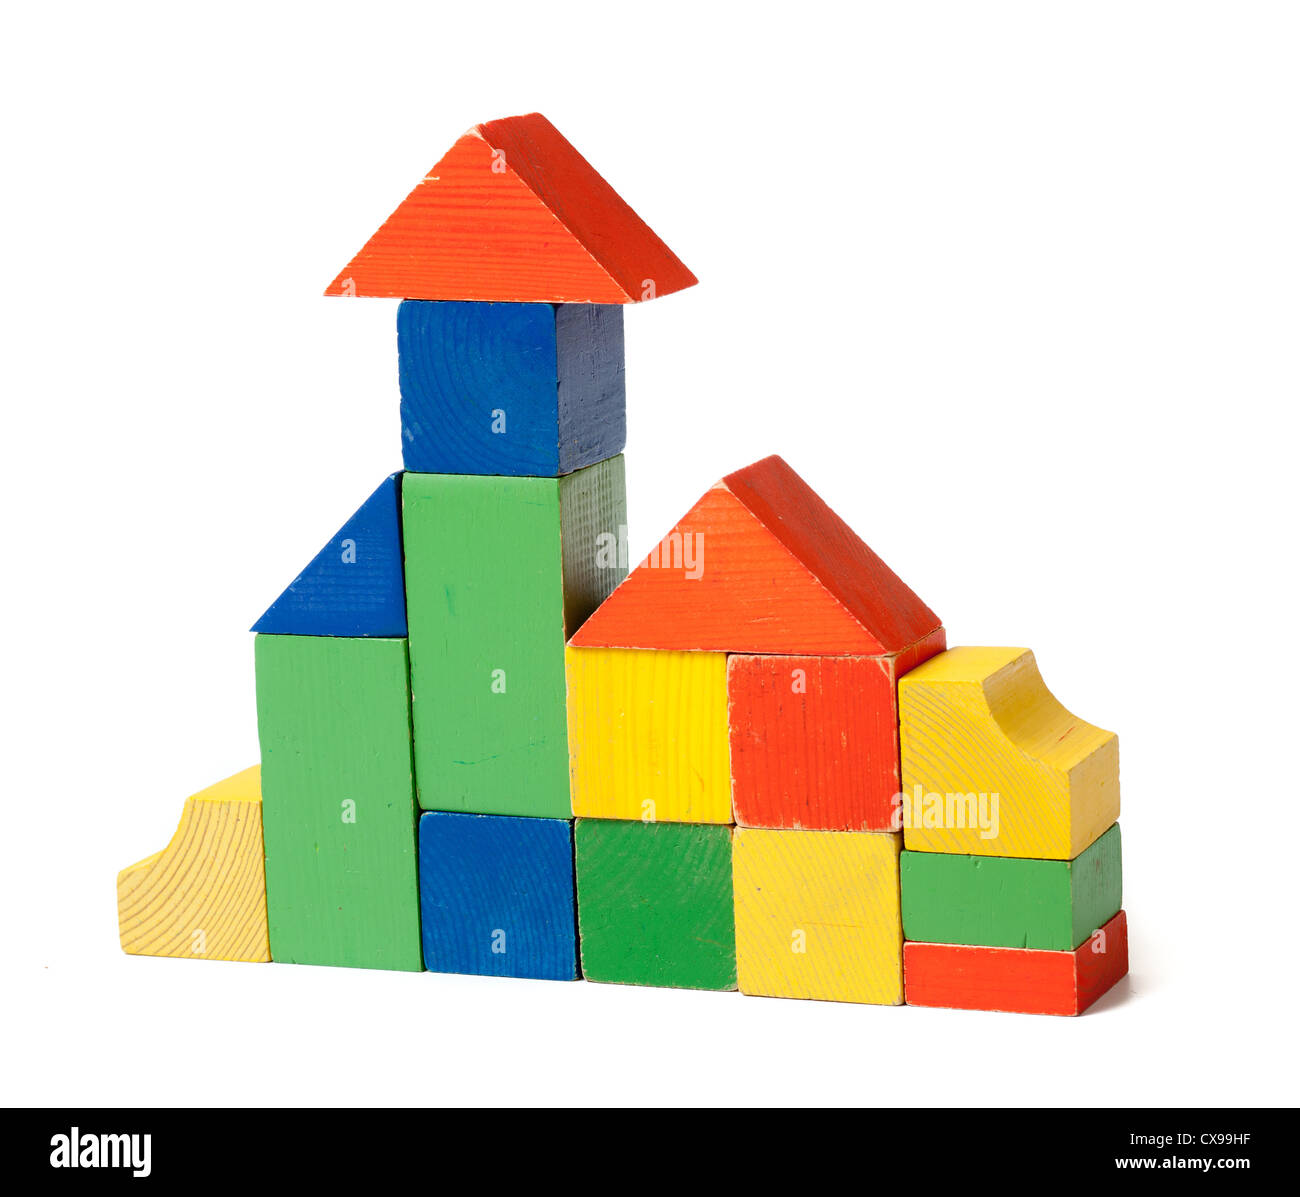 Casa simple hecho de coloridos bloques de construcción de madera Foto de stock